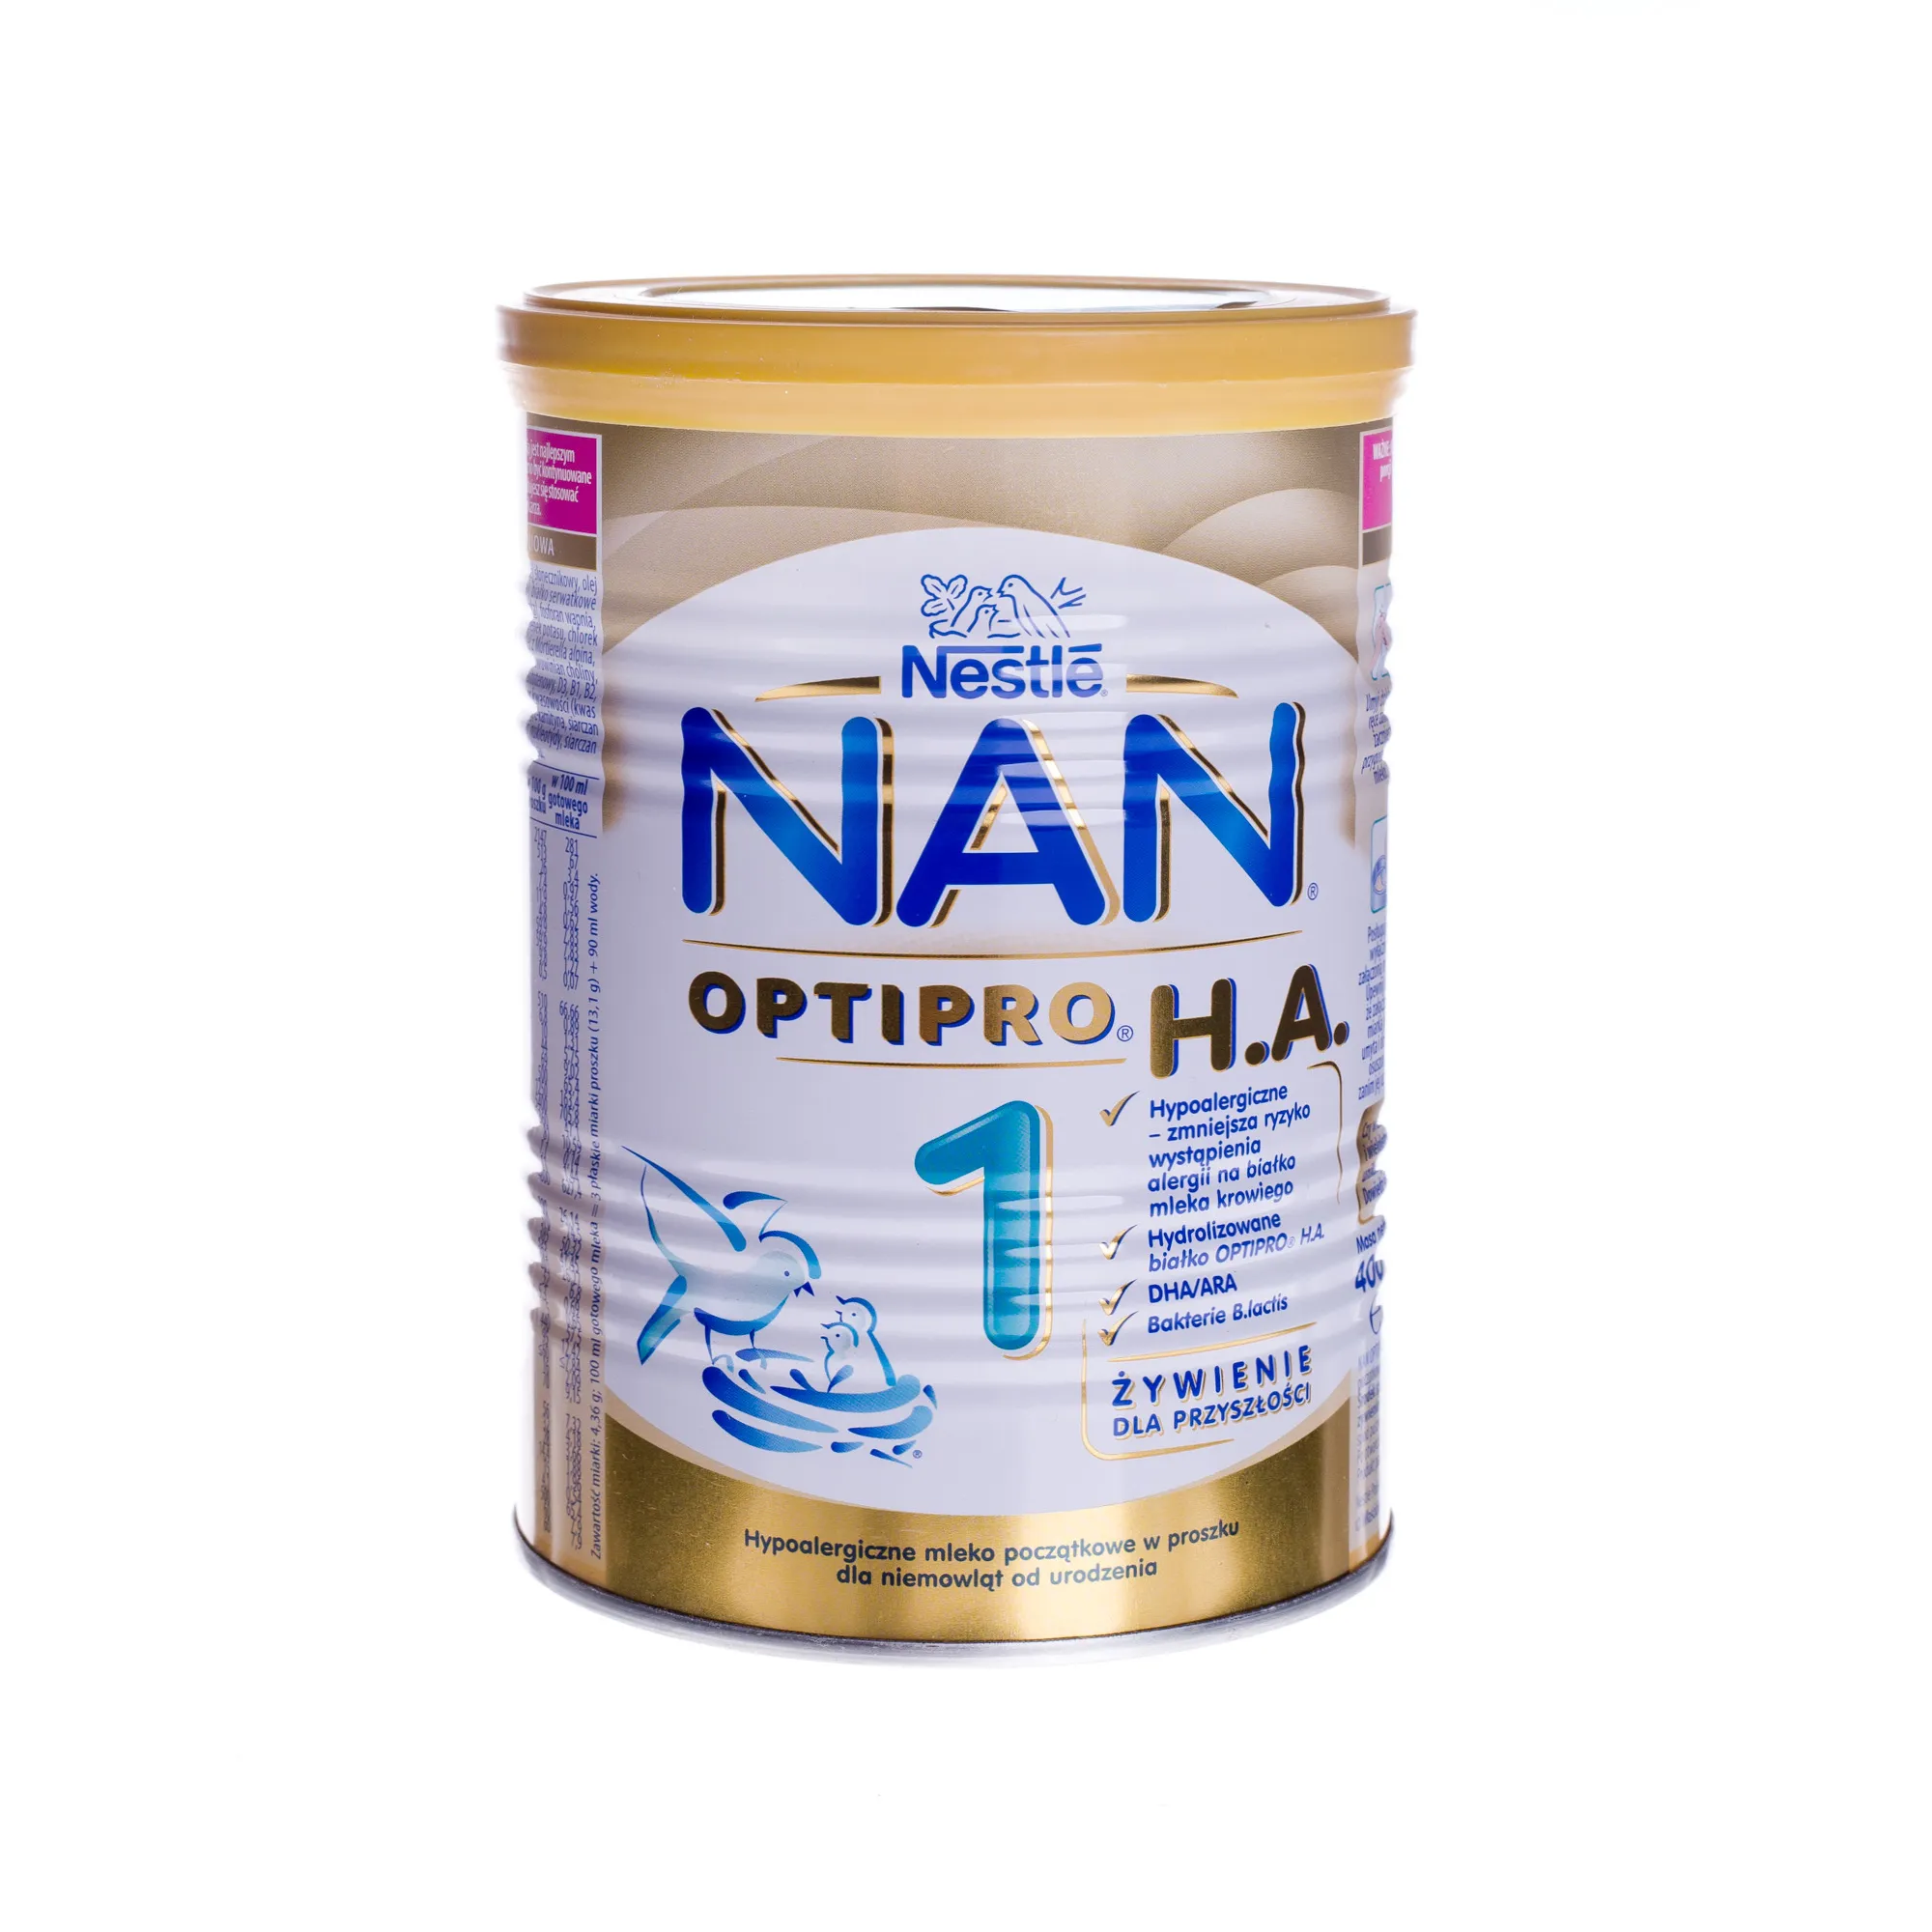 NAN Optipro H.A. 1, 400 g